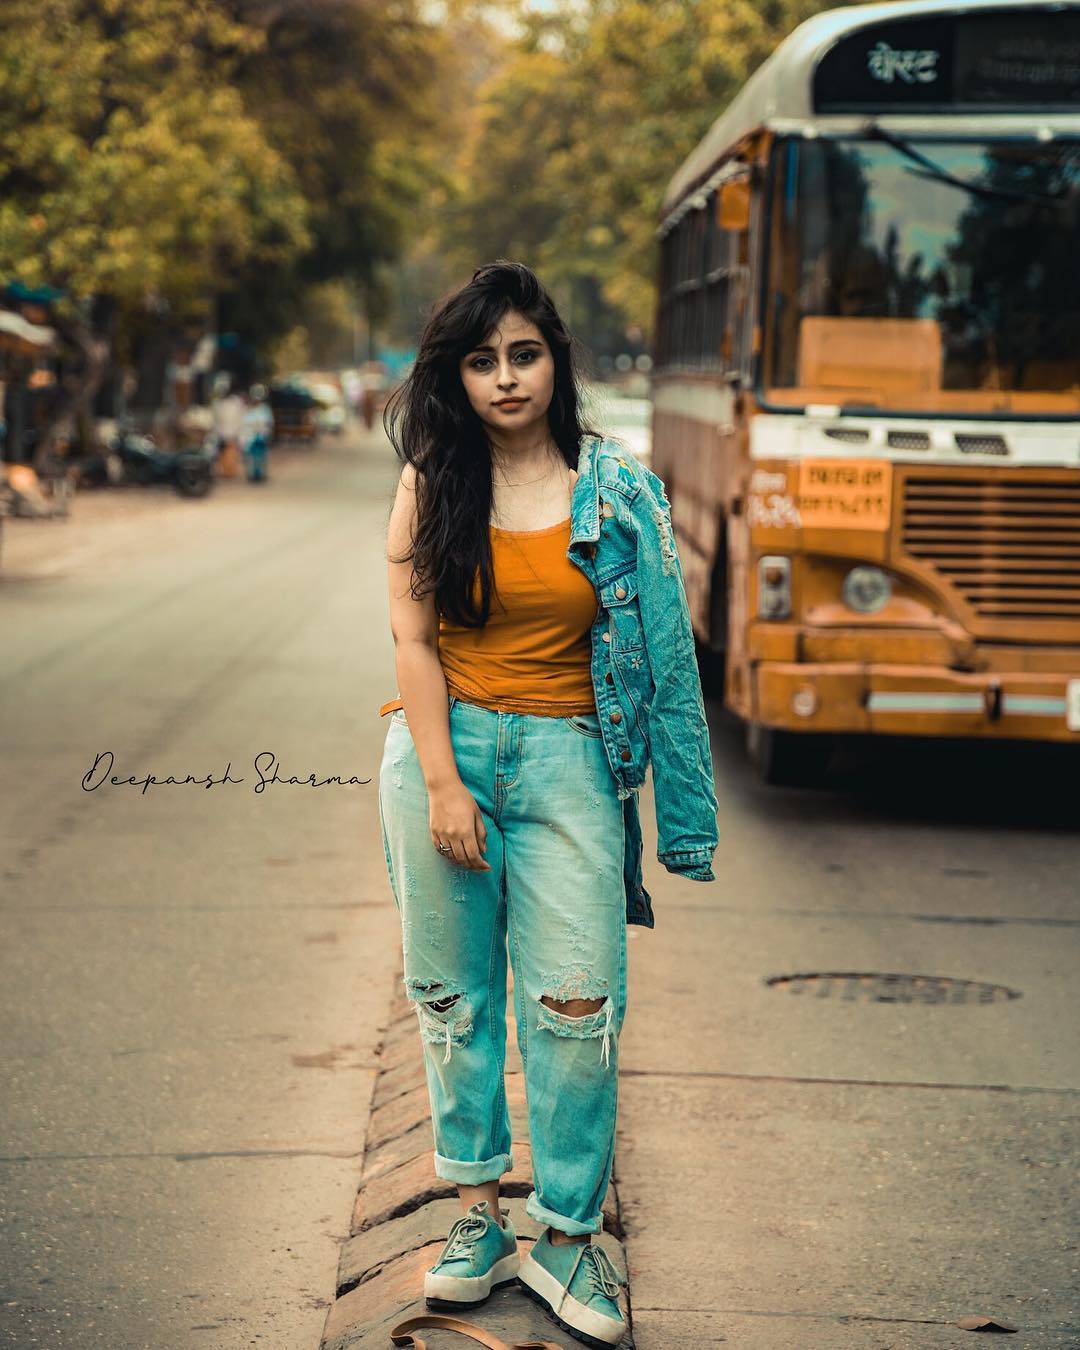 Vitasta bhat  photo girl